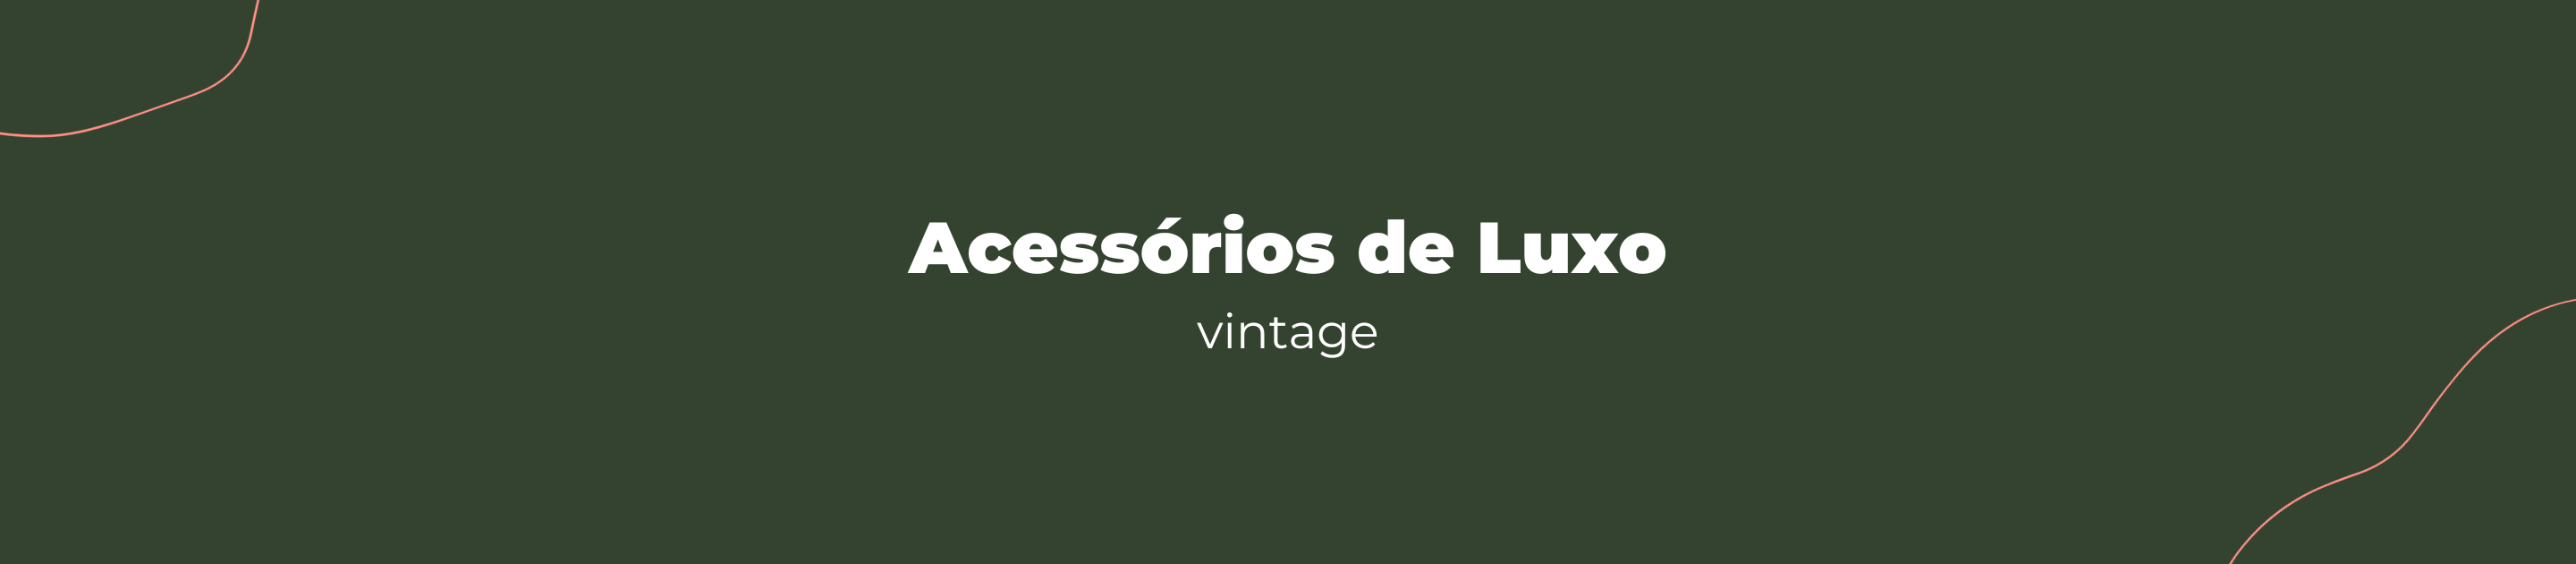 Acessórios de Luxo Vintage